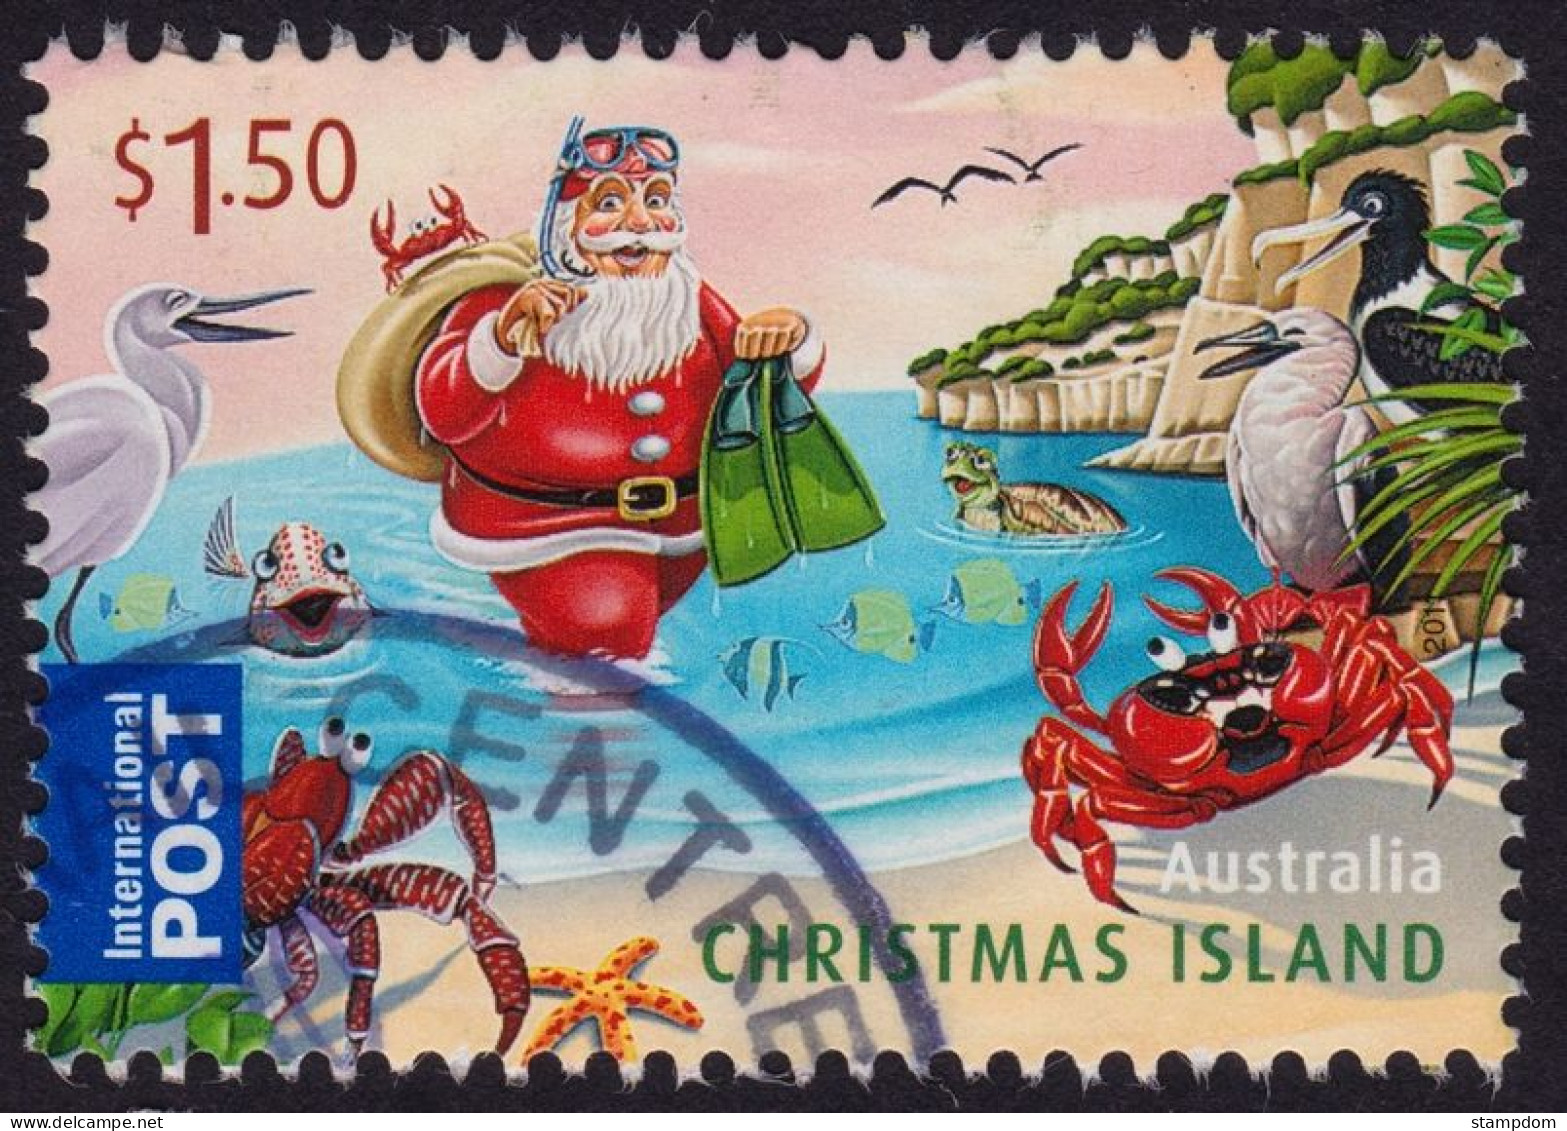 AUSTRALIA CHRISTMAS ISLAND 2011 Christmas $1.50 Sc#498 USED @O448 - Christmas Island